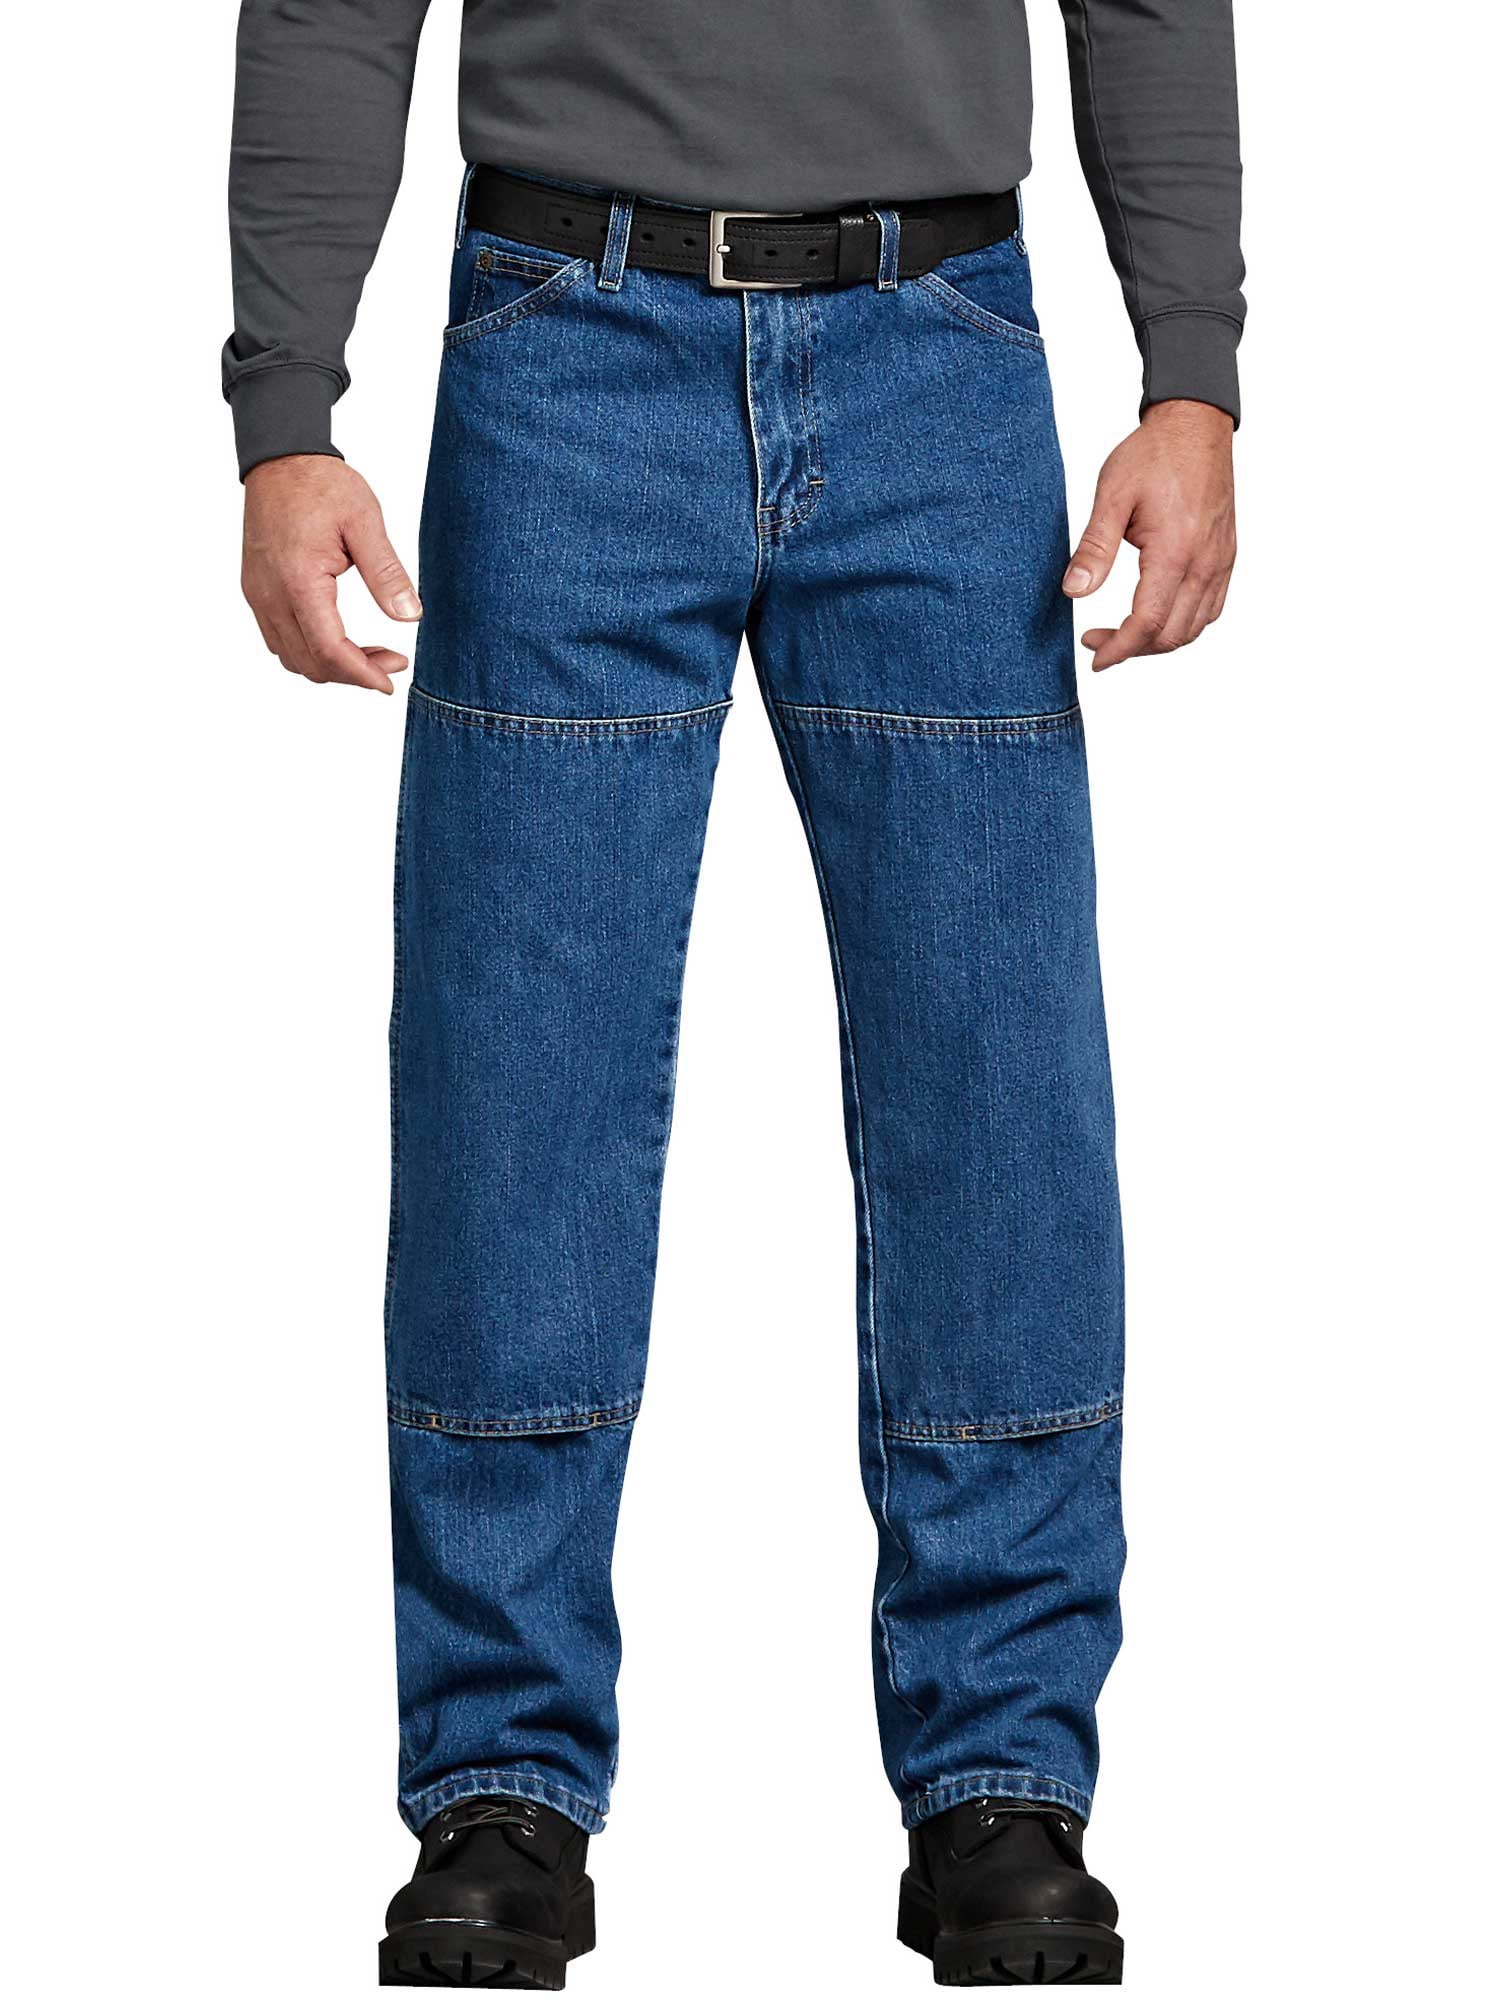 dickie jeans walmart